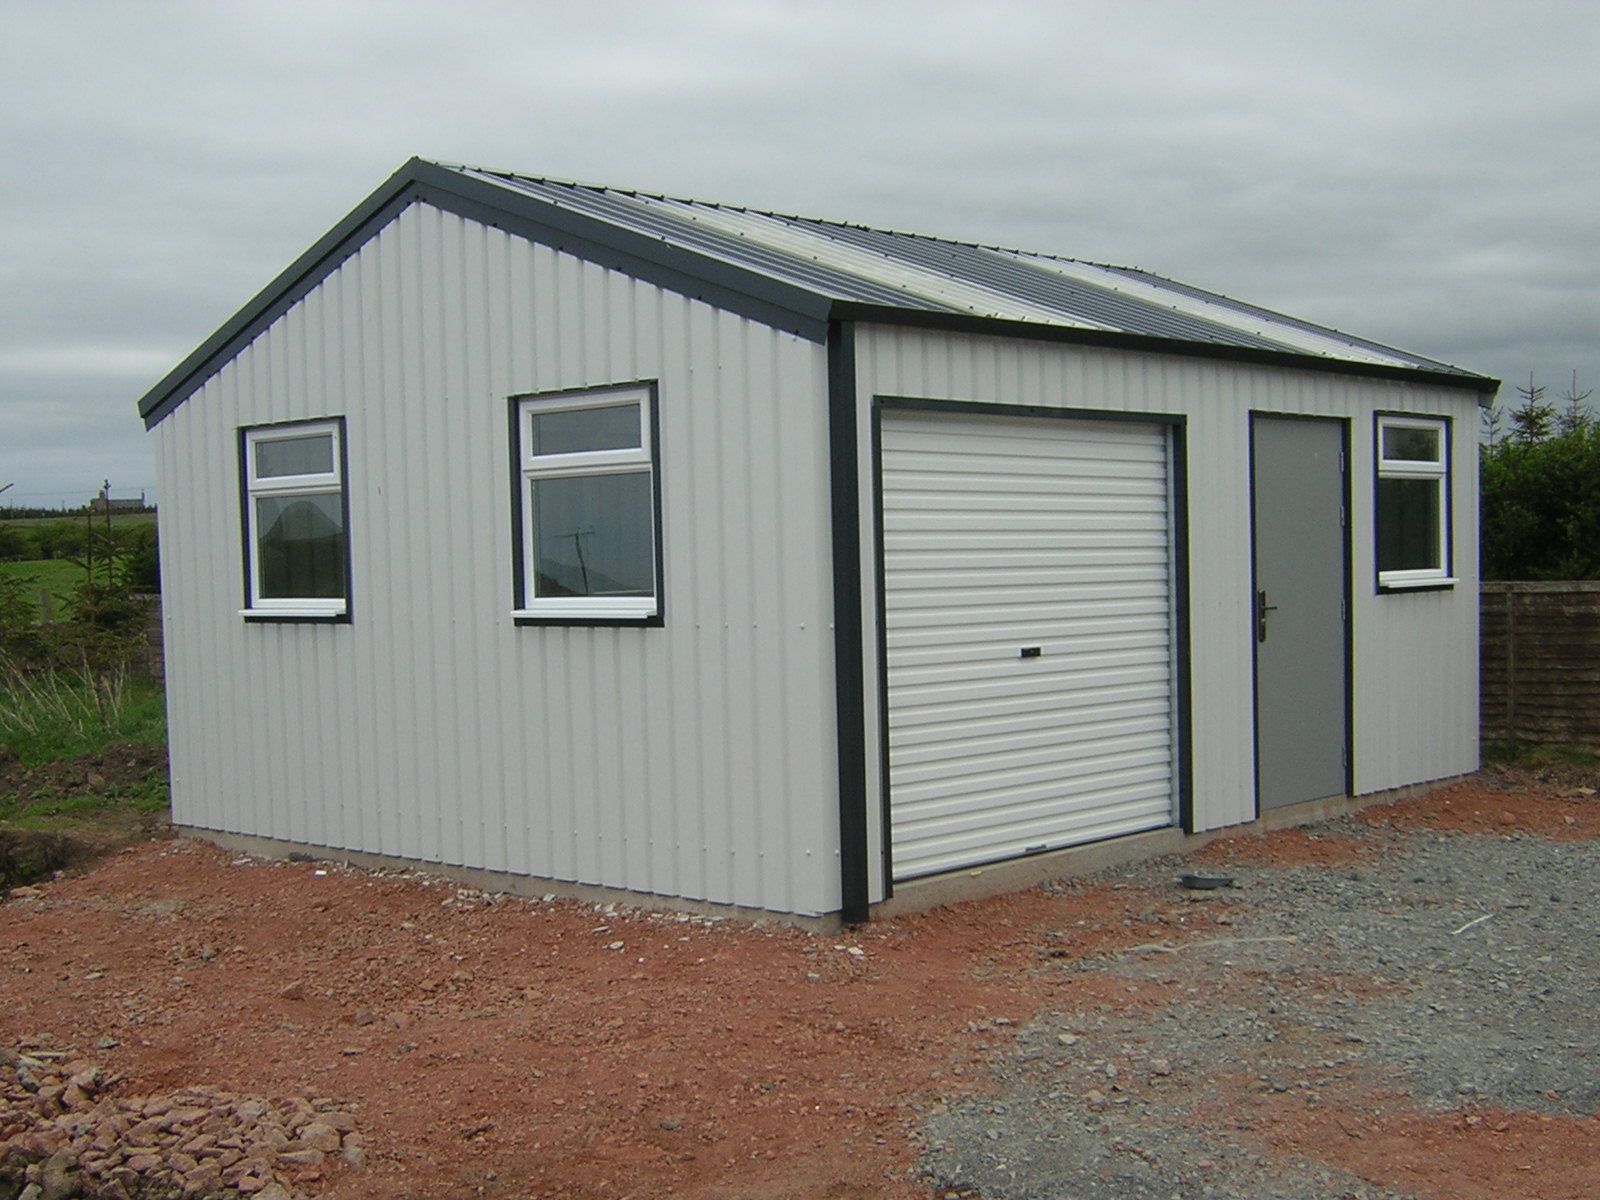 Bespoke Steel Buildings For Domestic Workshops In Devon